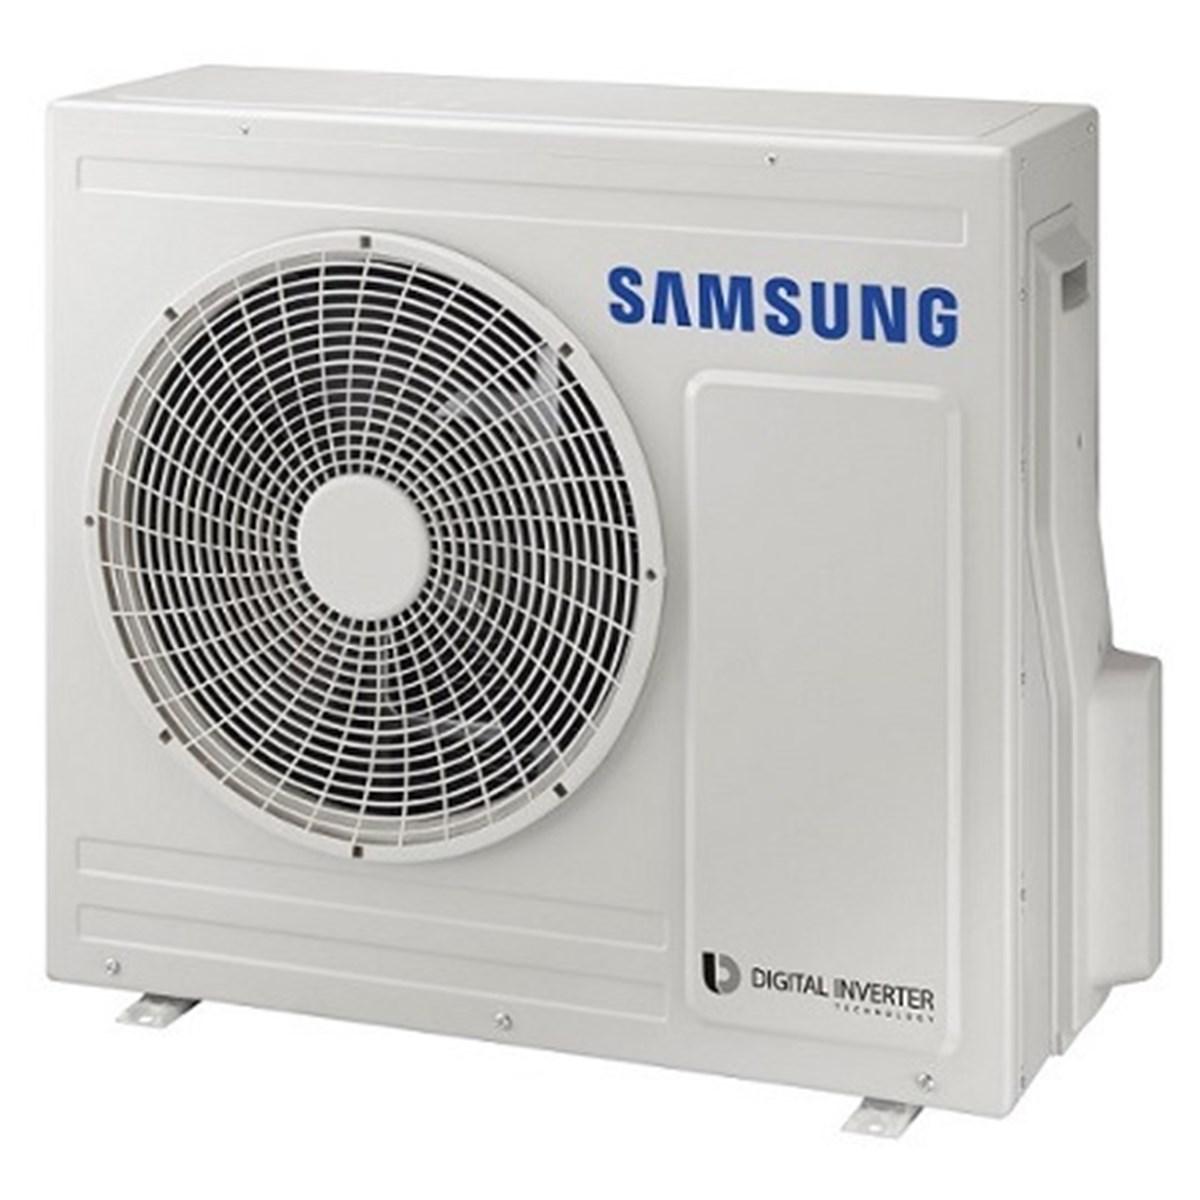 Samsung wärmepumpe - Split, Luft-Wasser, hochtemperatur wärmepumpe, Erfahrungen